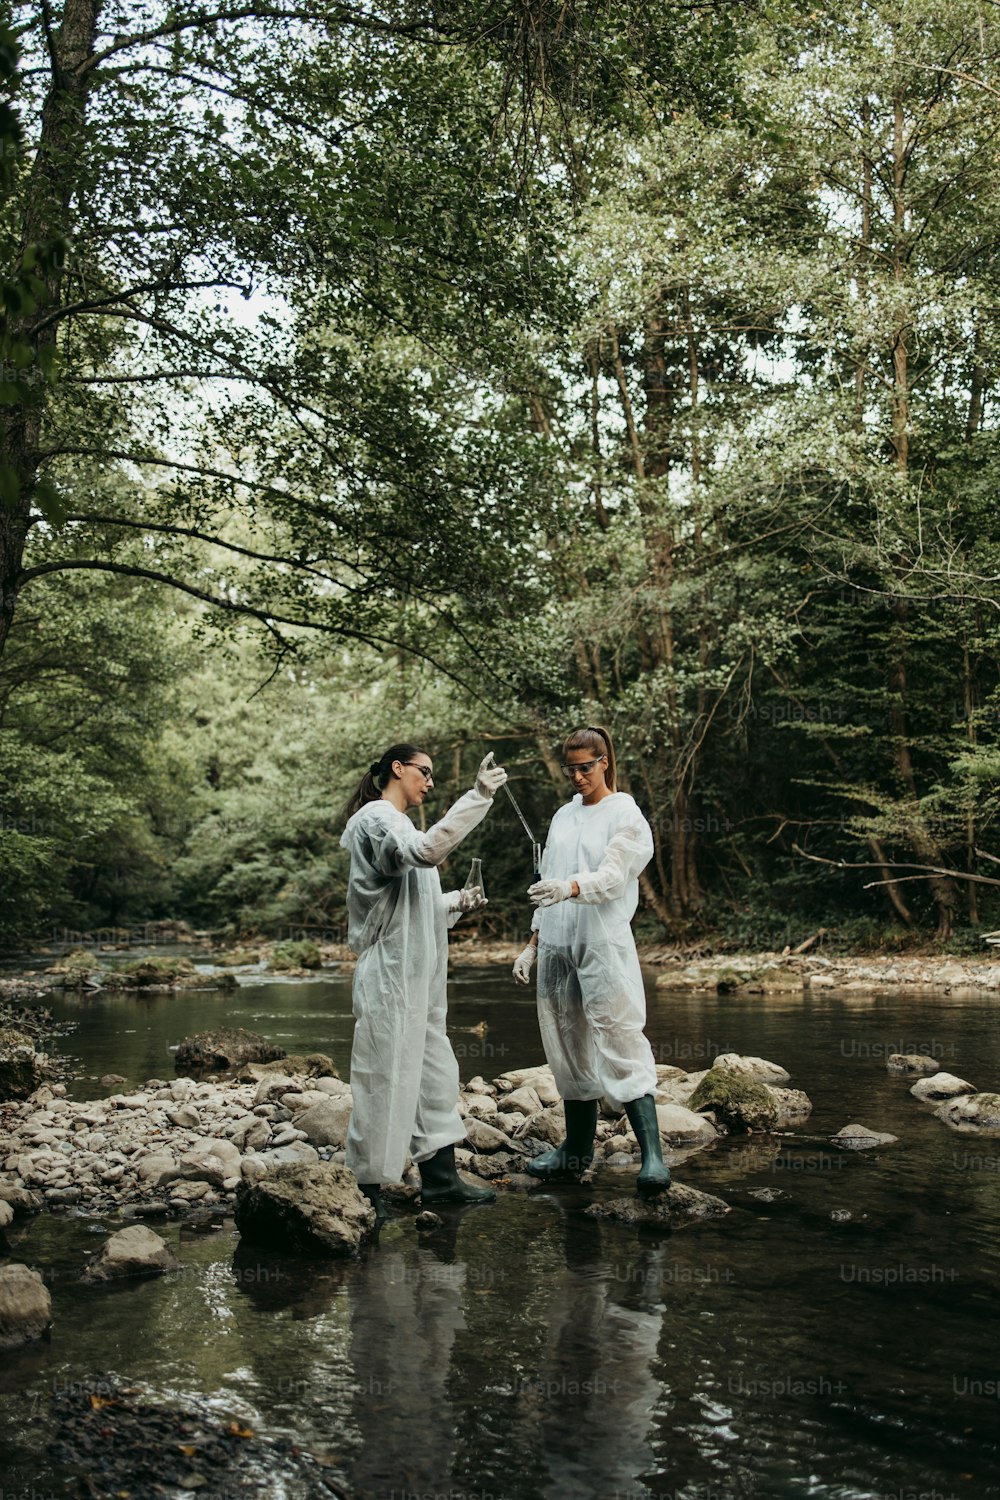 보호 복을 입은 과학자 생물 학자와 연구원이 오염 된 강에서 물 샘플을 채취합니다.